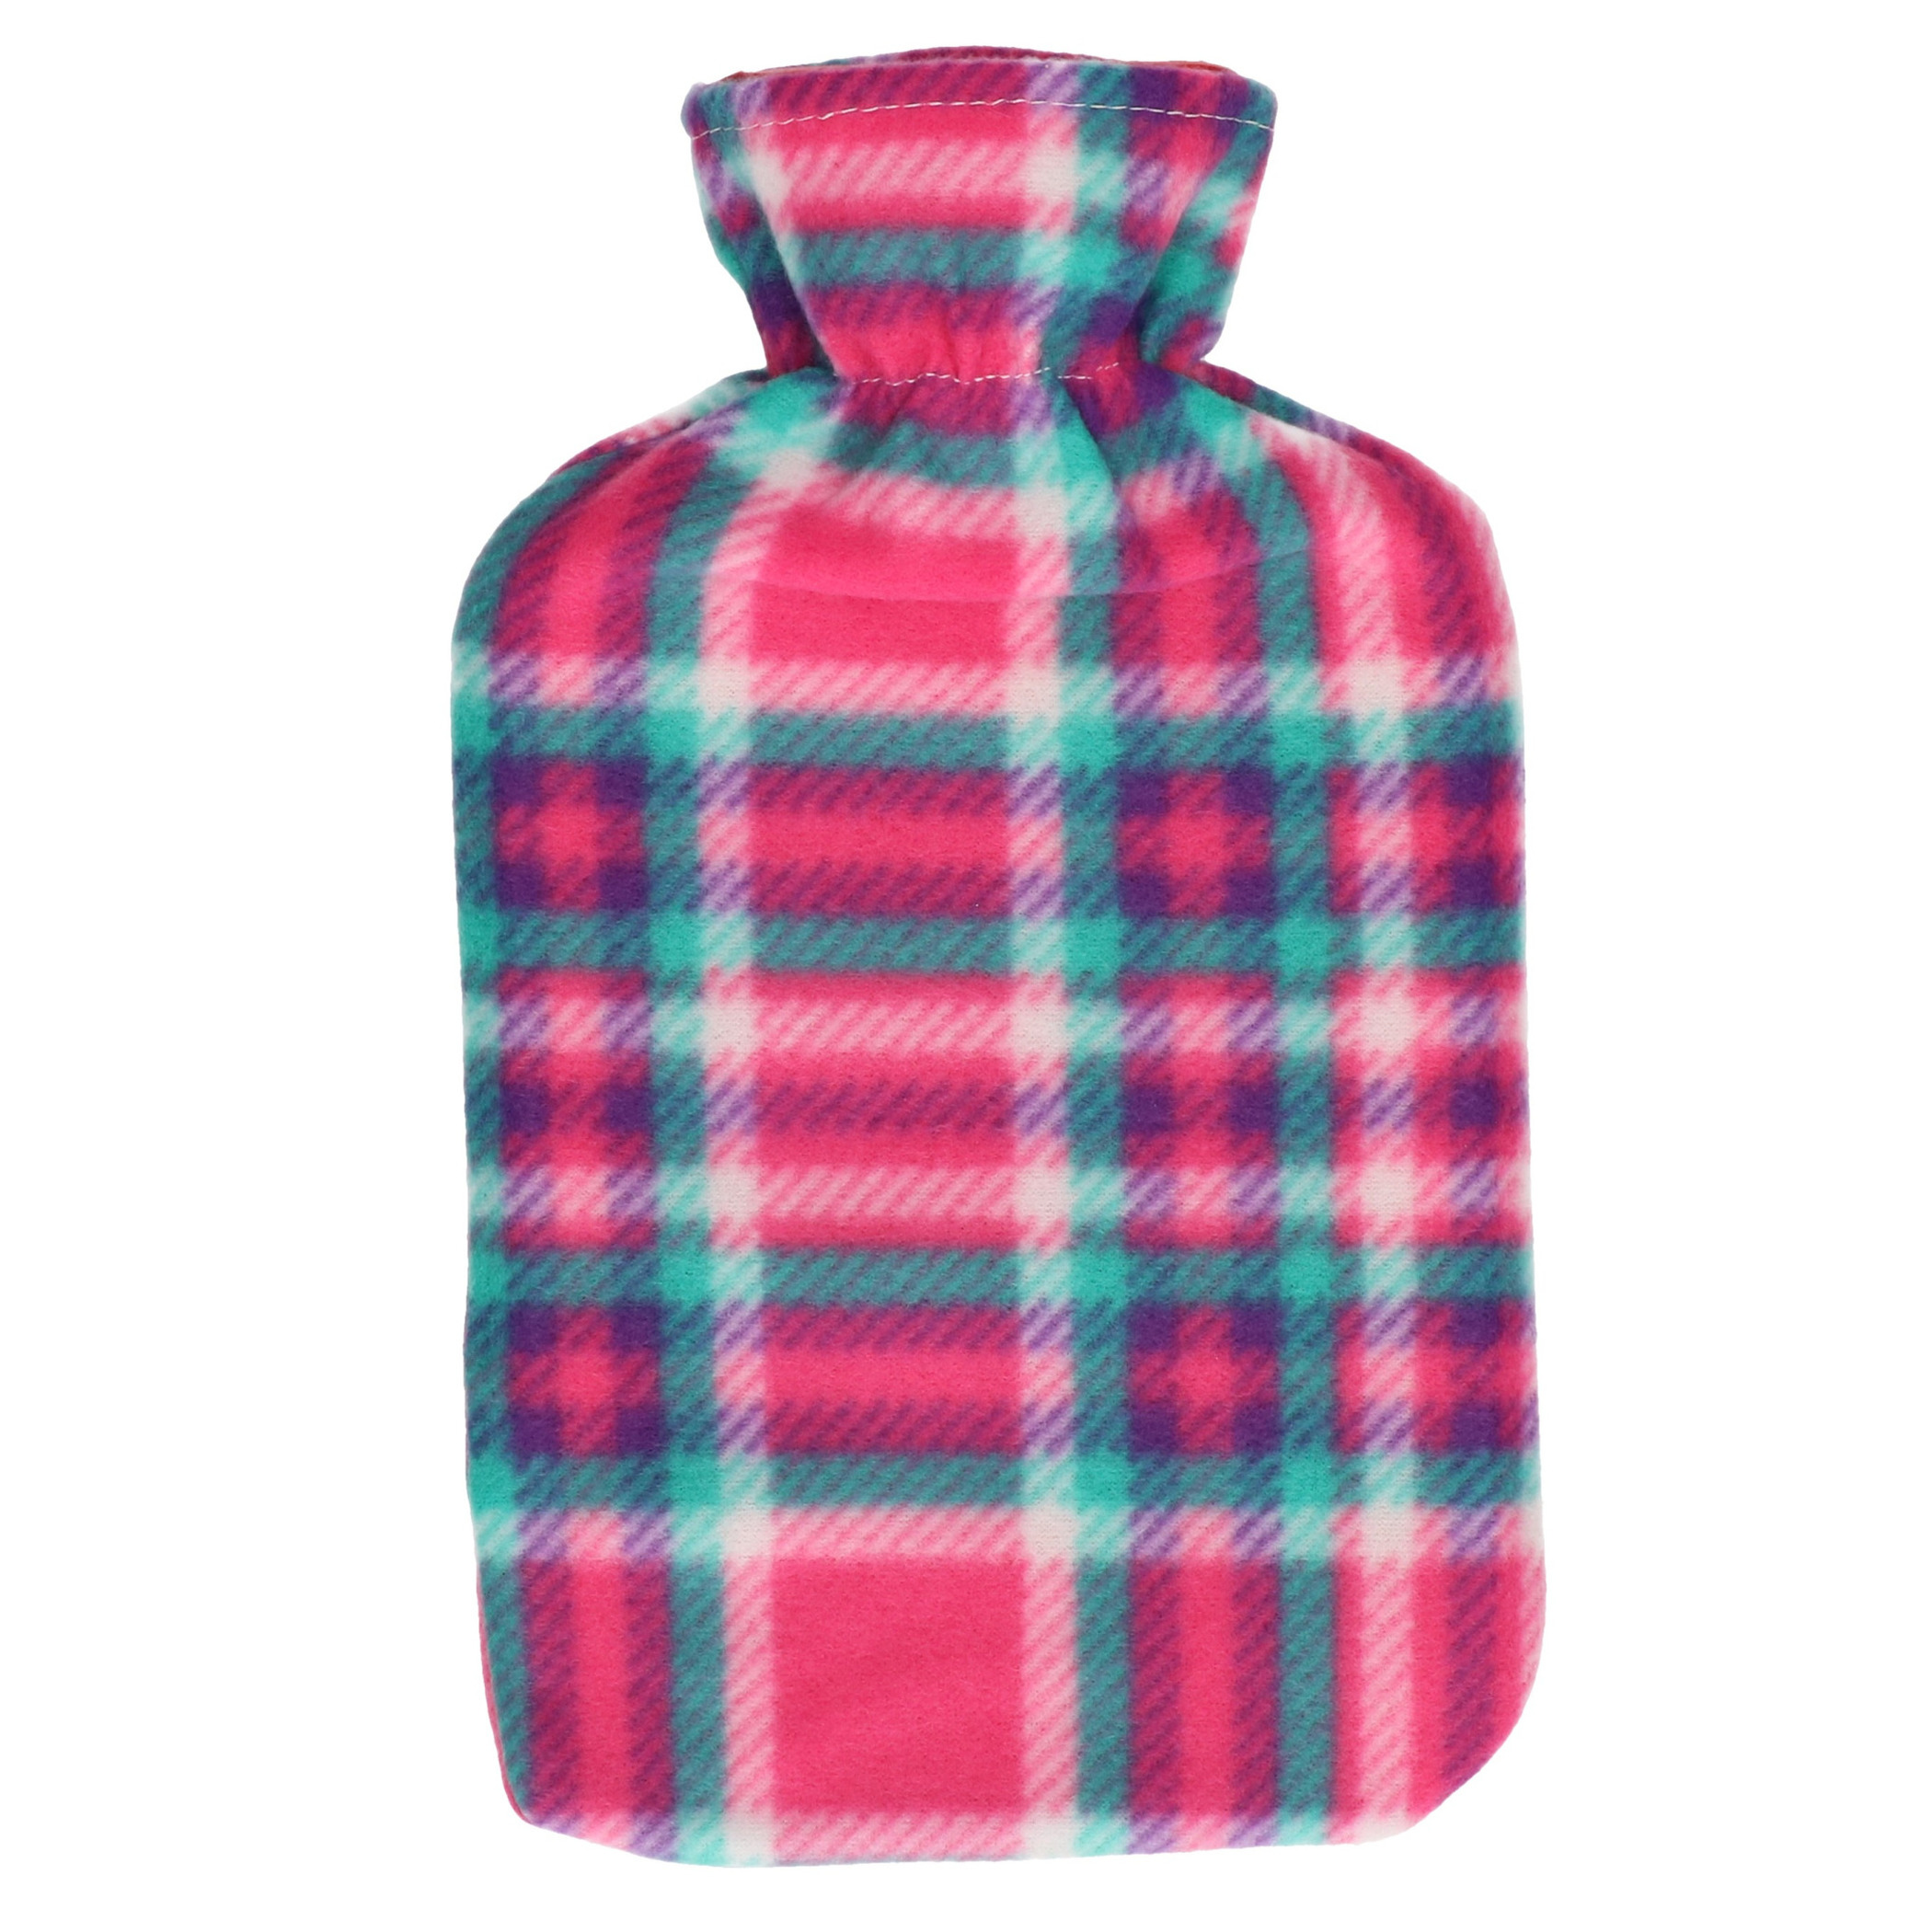 Water kruik met fleece hoes roze Schotse ruit print 1,7 liter